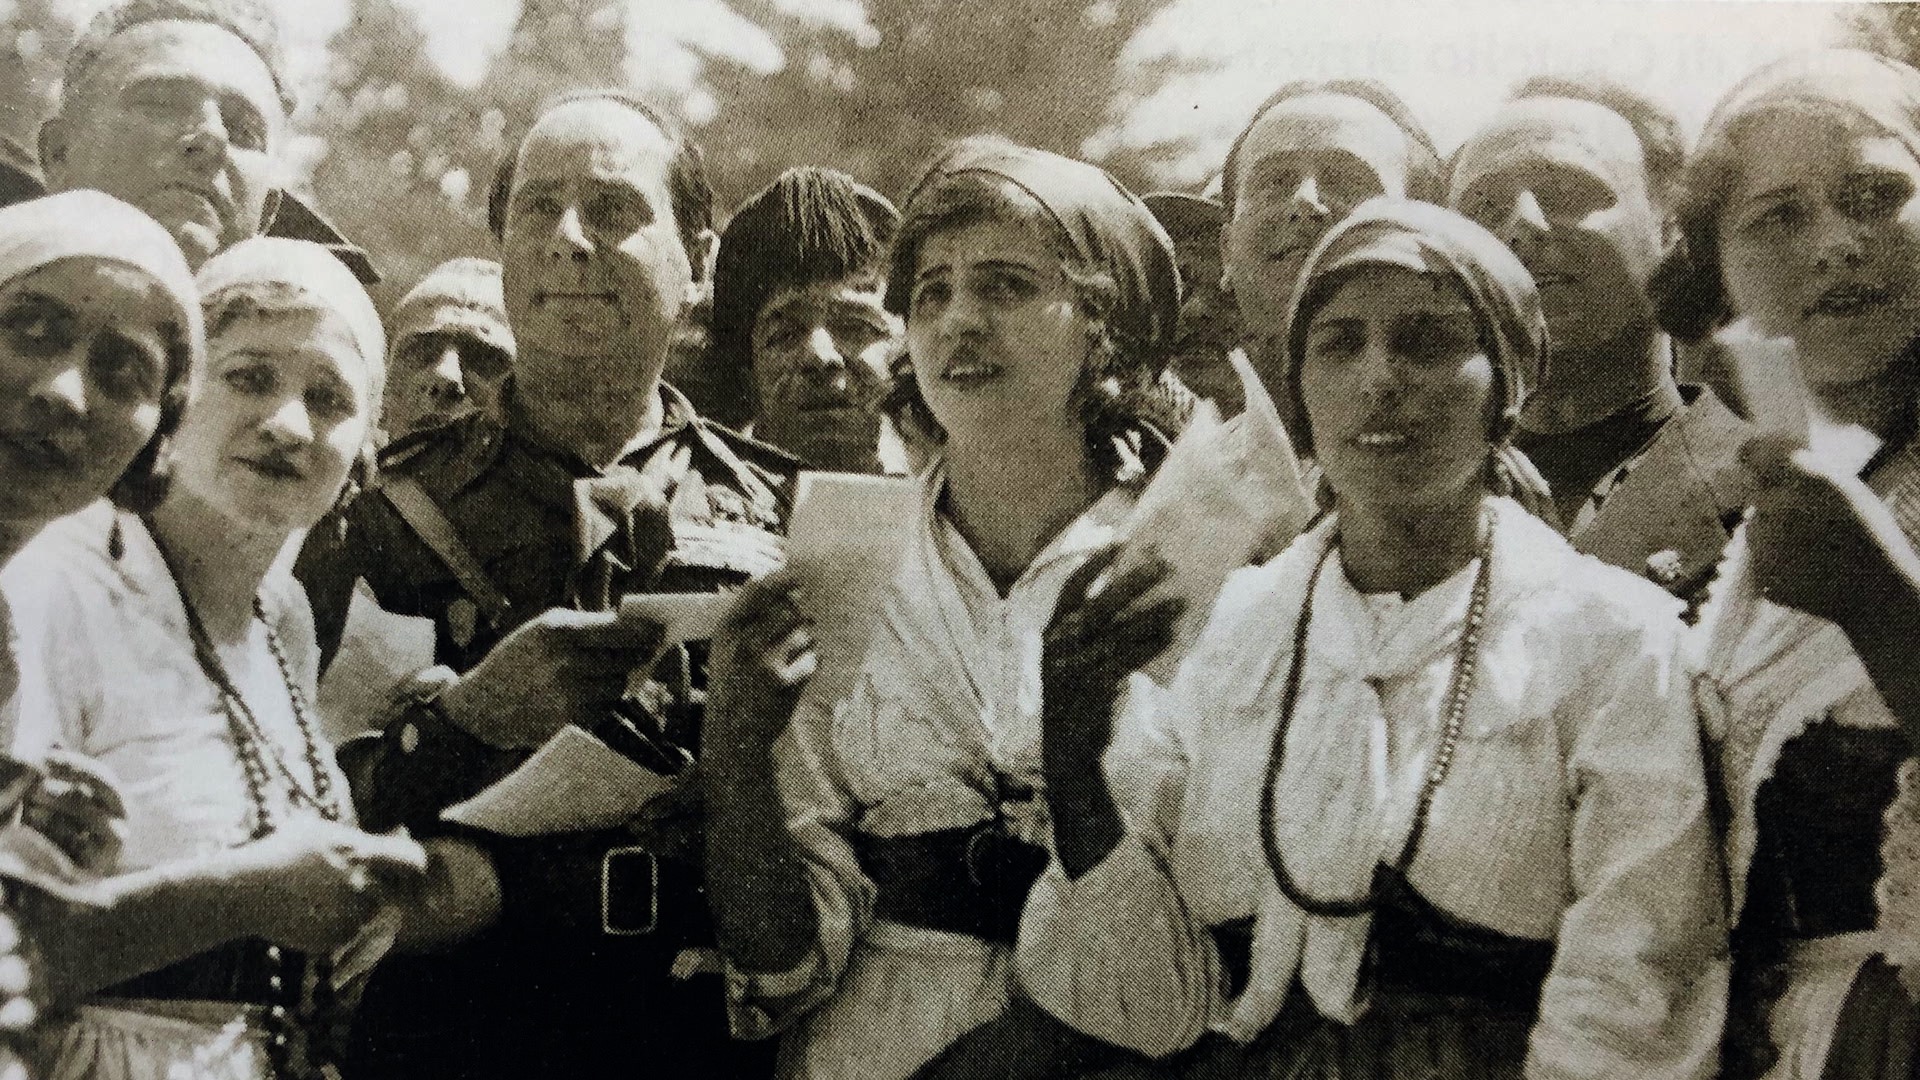 Starace alla Montesca nel 1933 (A. Tacchini, “Il fascismo a Città di Castello”)